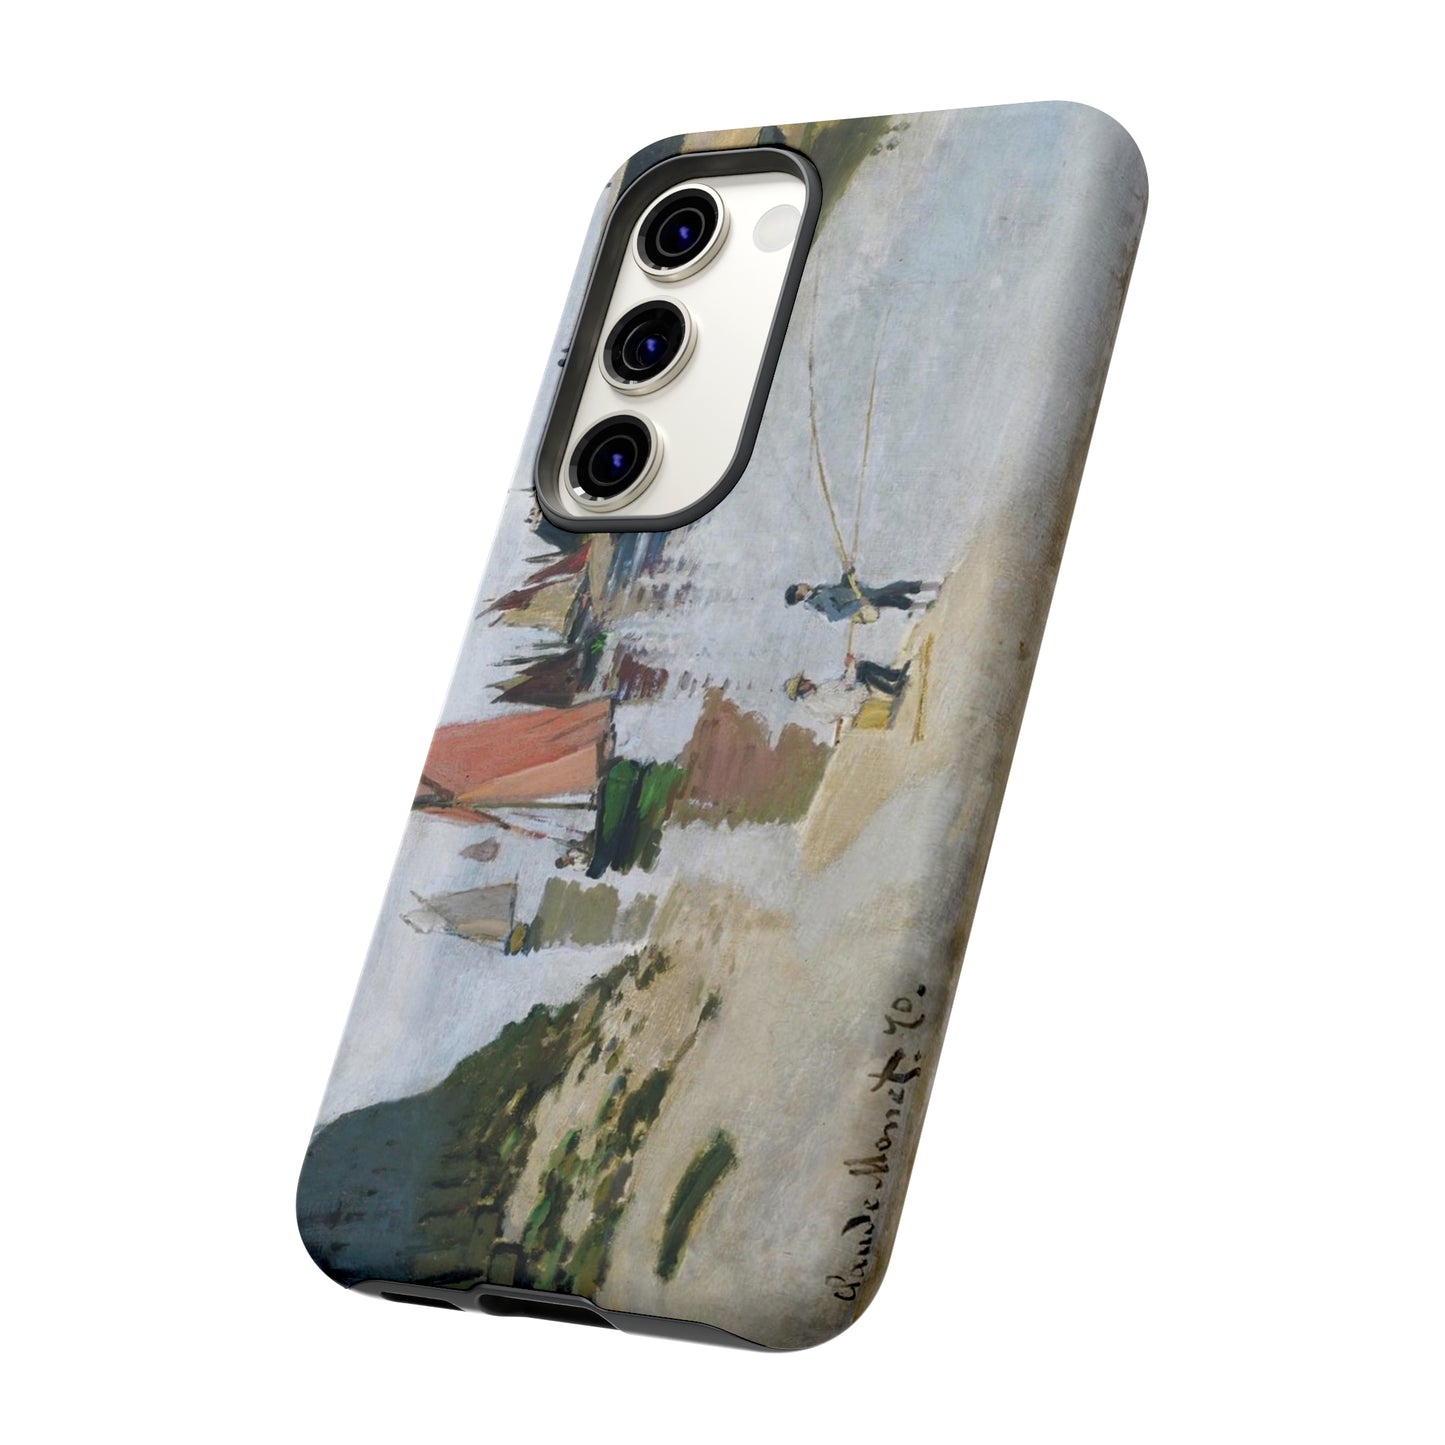 Le Port de Trouville by Claude Monet - Cell Phone Case